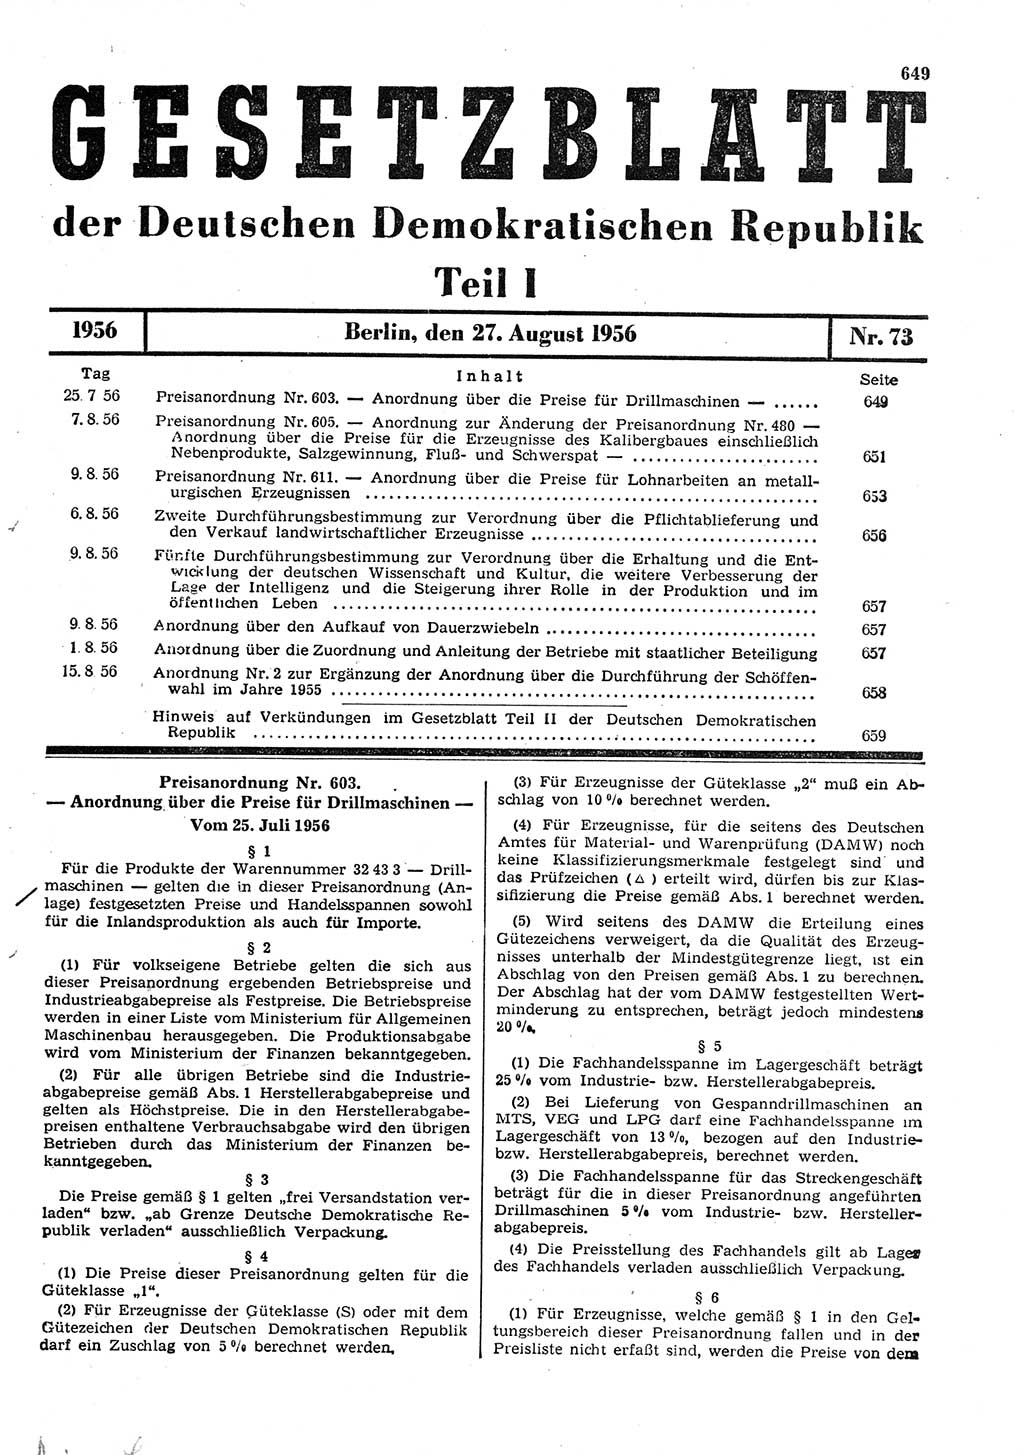 Gesetzblatt (GBl.) der Deutschen Demokratischen Republik (DDR) Teil Ⅰ 1956, Seite 649 (GBl. DDR Ⅰ 1956, S. 649)